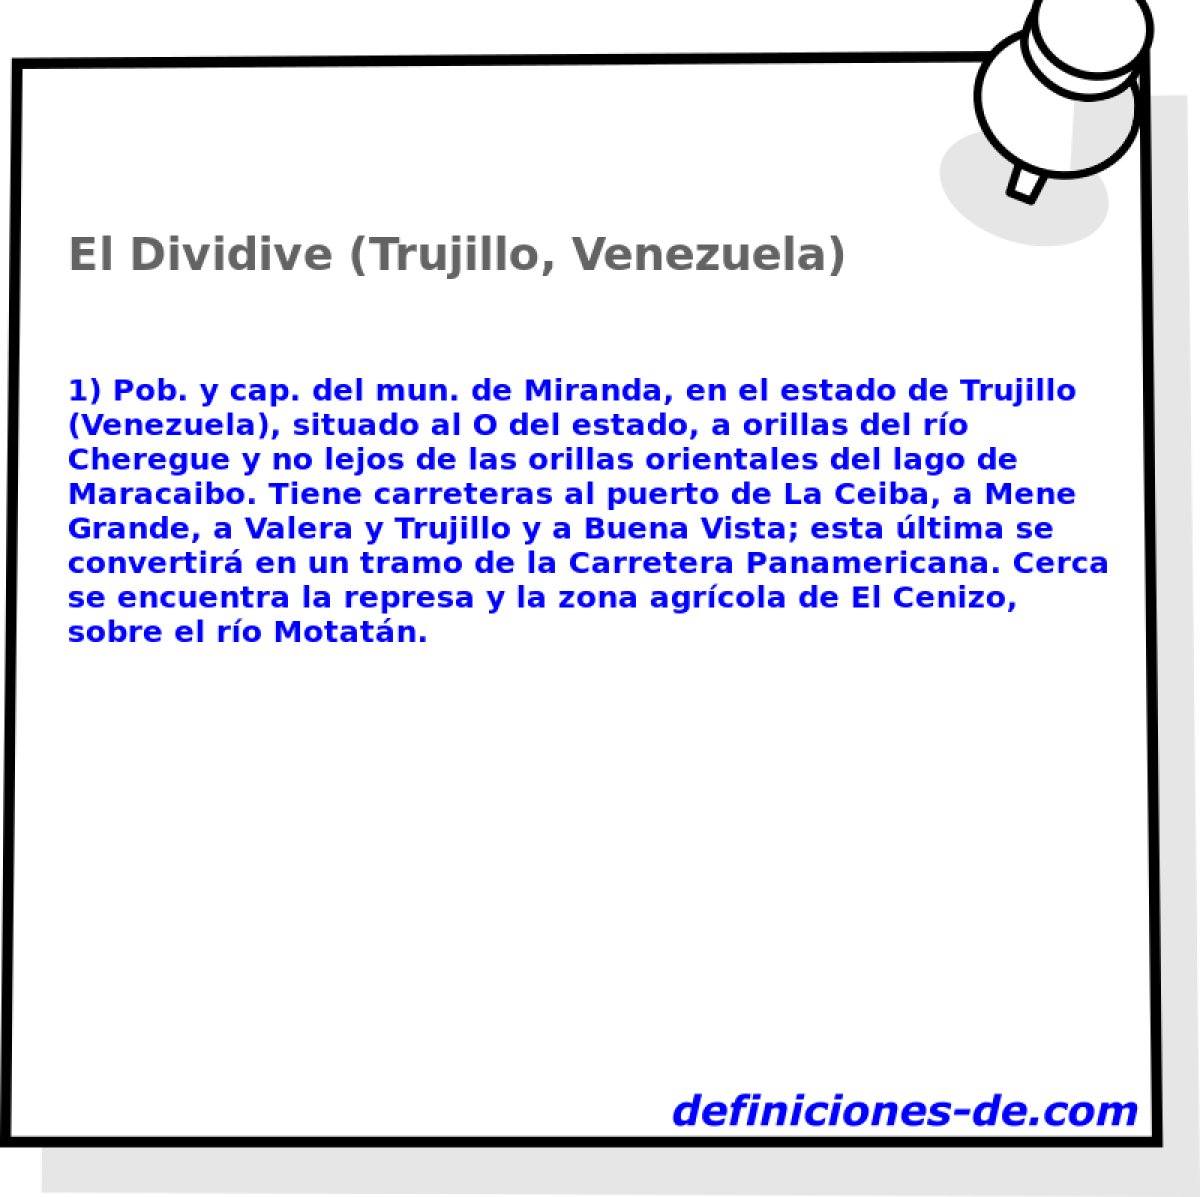 El Dividive (Trujillo, Venezuela) 